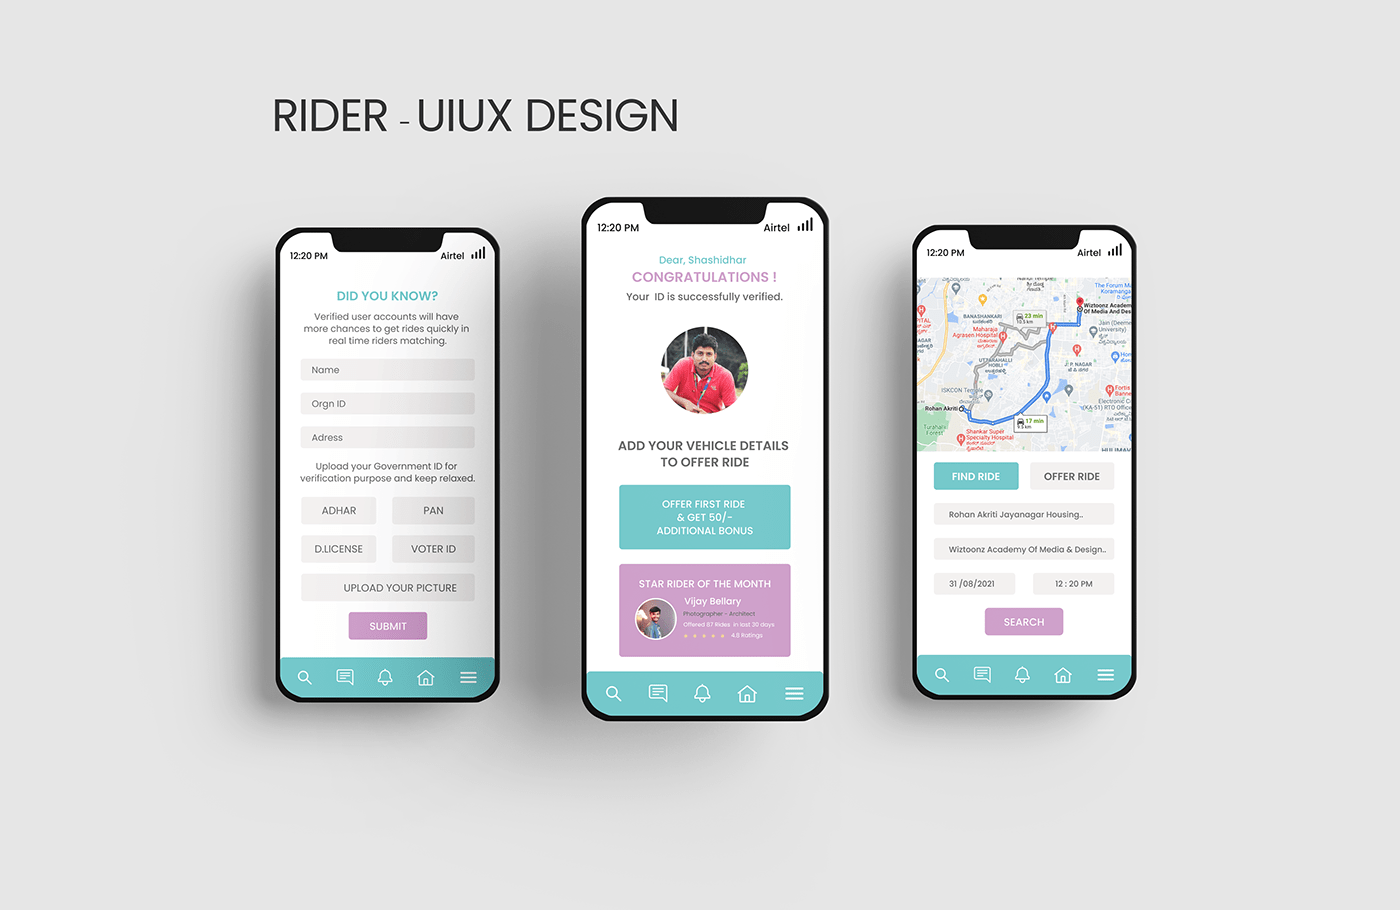 #rider app design brand identity Illustrator typography   ui design UI/UX uiuxdesign ux uxresearch